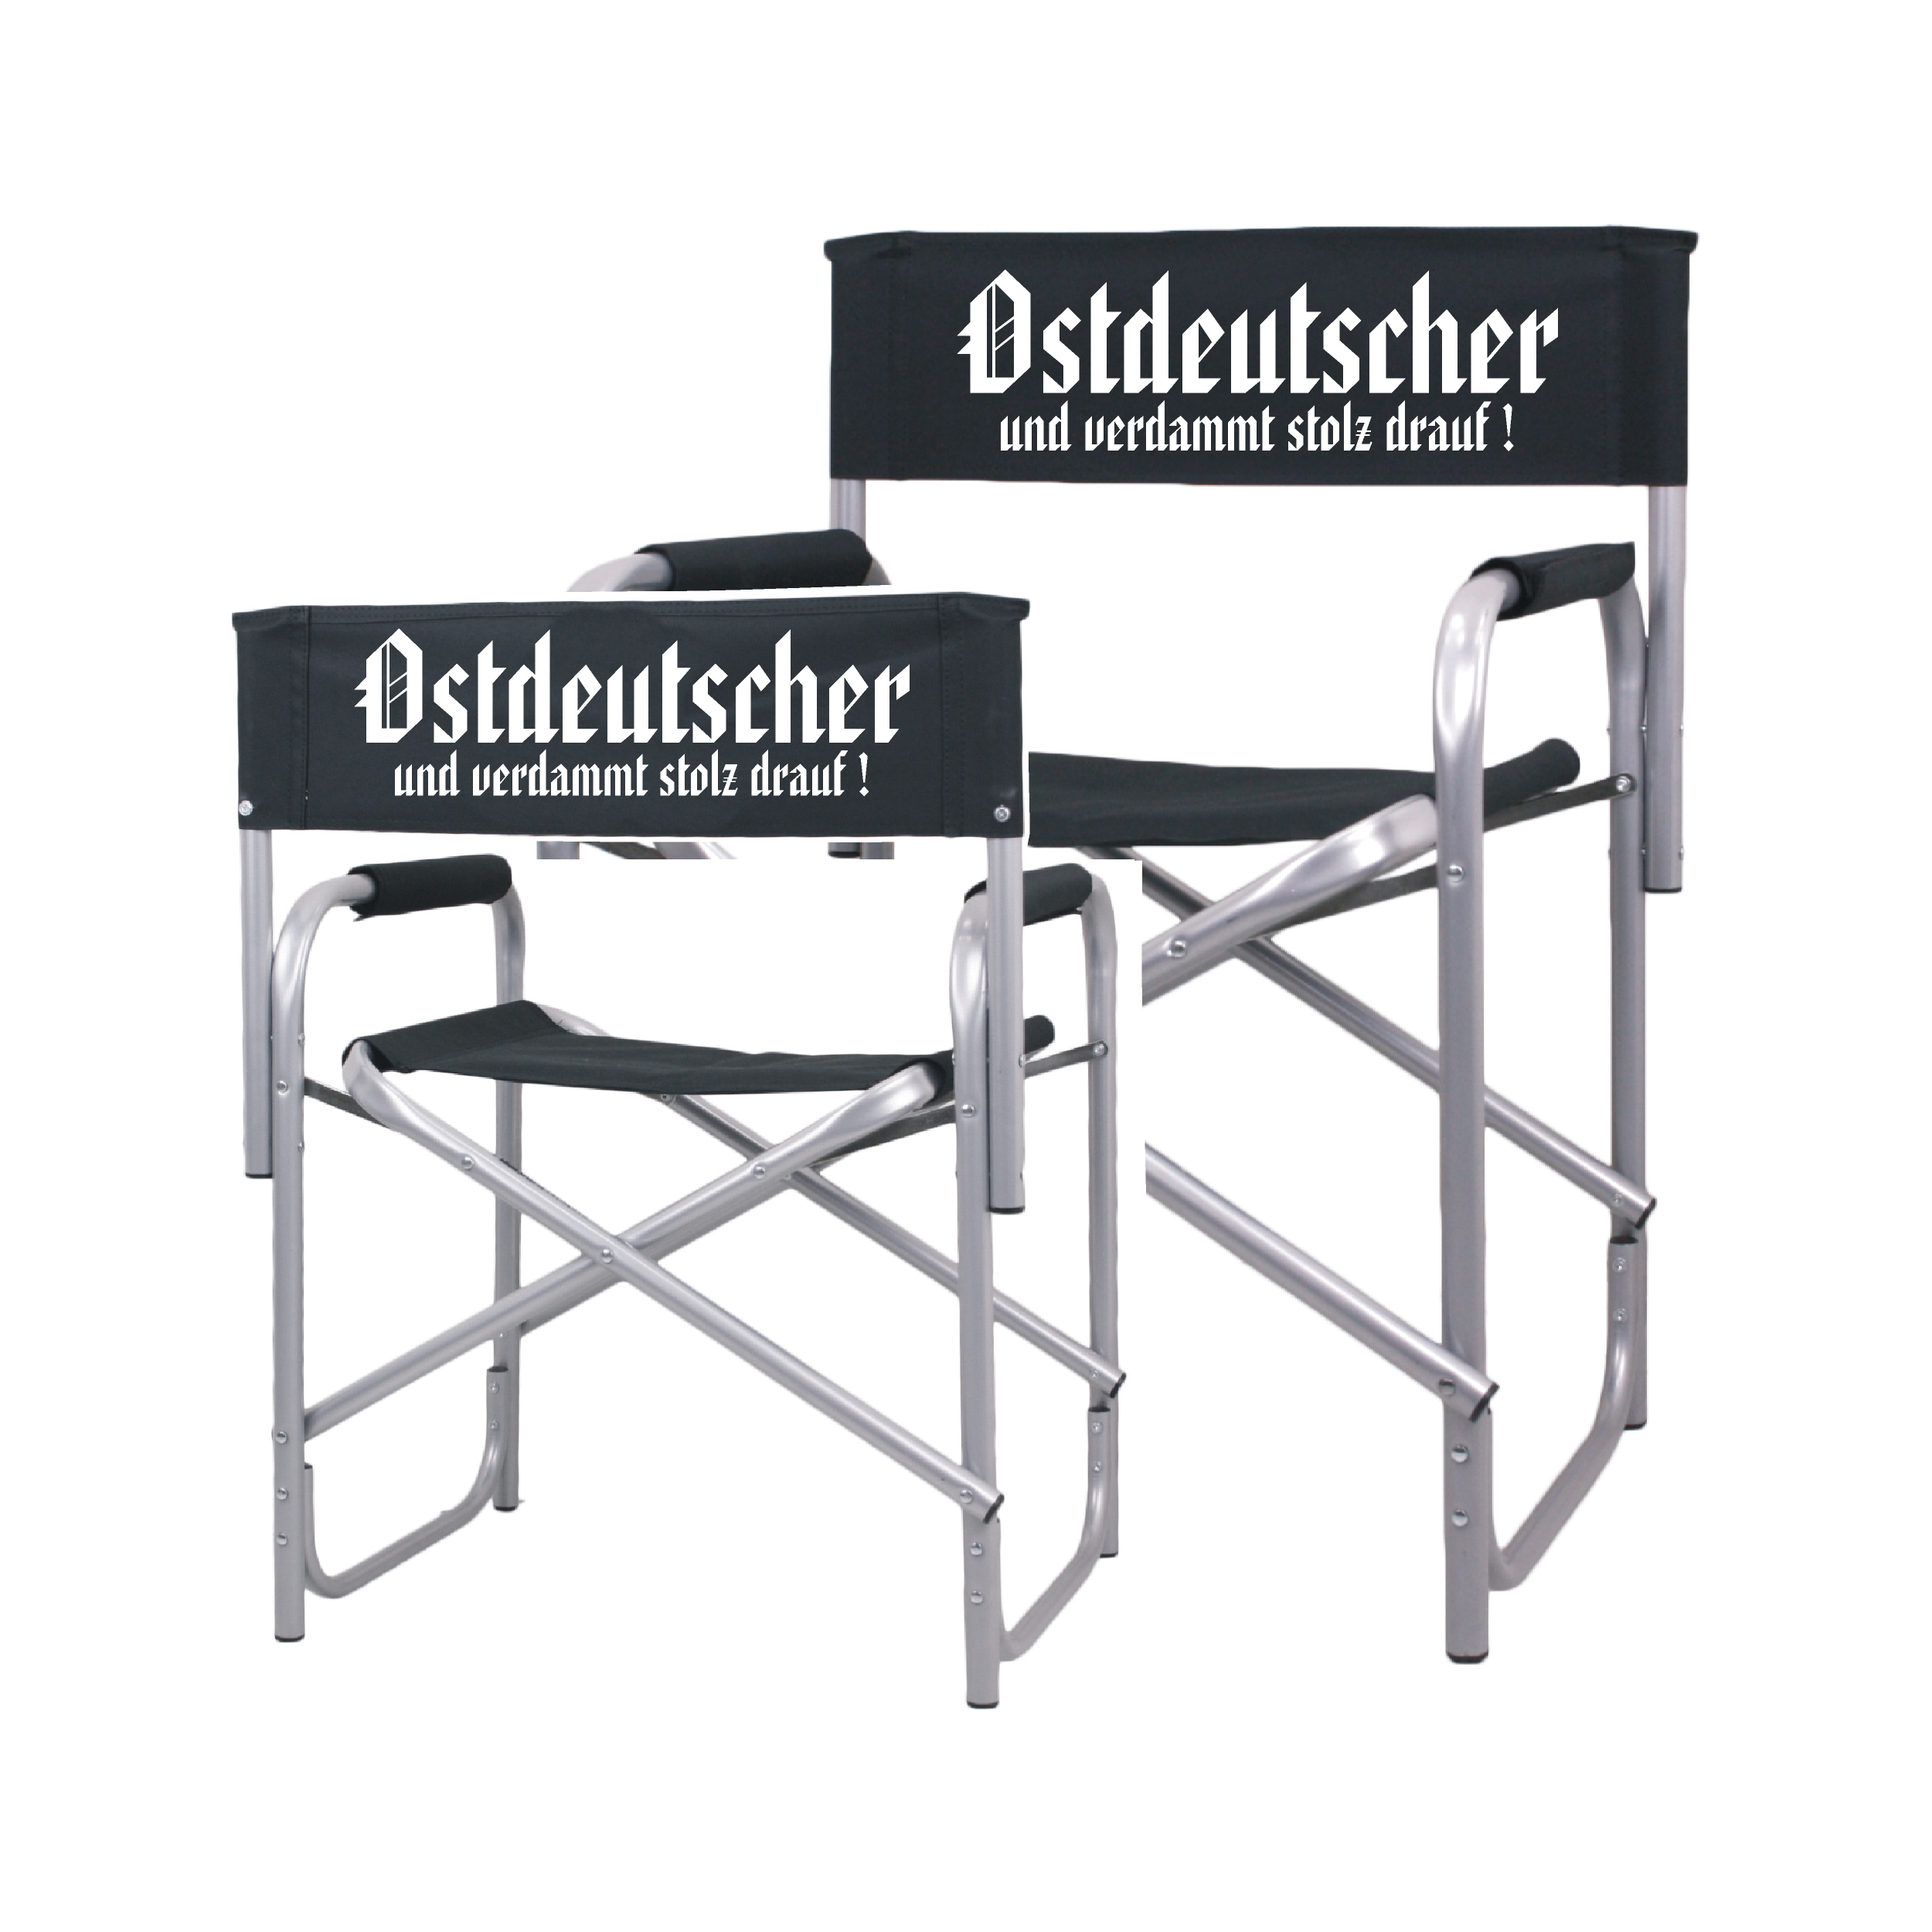 Der Regiestuhl "Vorsicht Ostdeutscher"